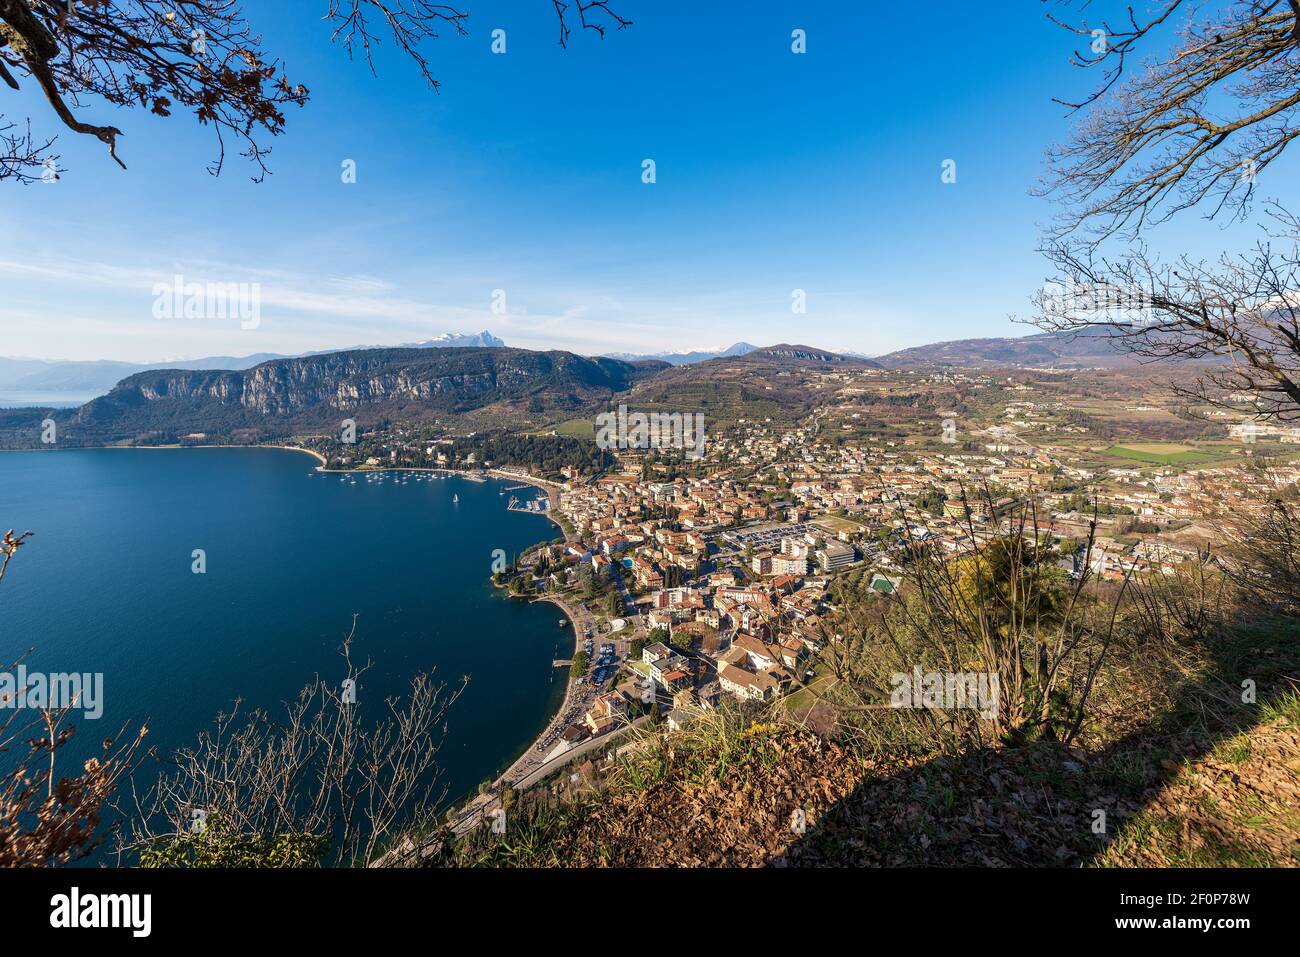 Vue aérienne de la petite ville de Garda, station touristique sur la côte du lac de Garde, vue de la Rocca di Garda, petite colline surplombant le lac. Italie. Banque D'Images